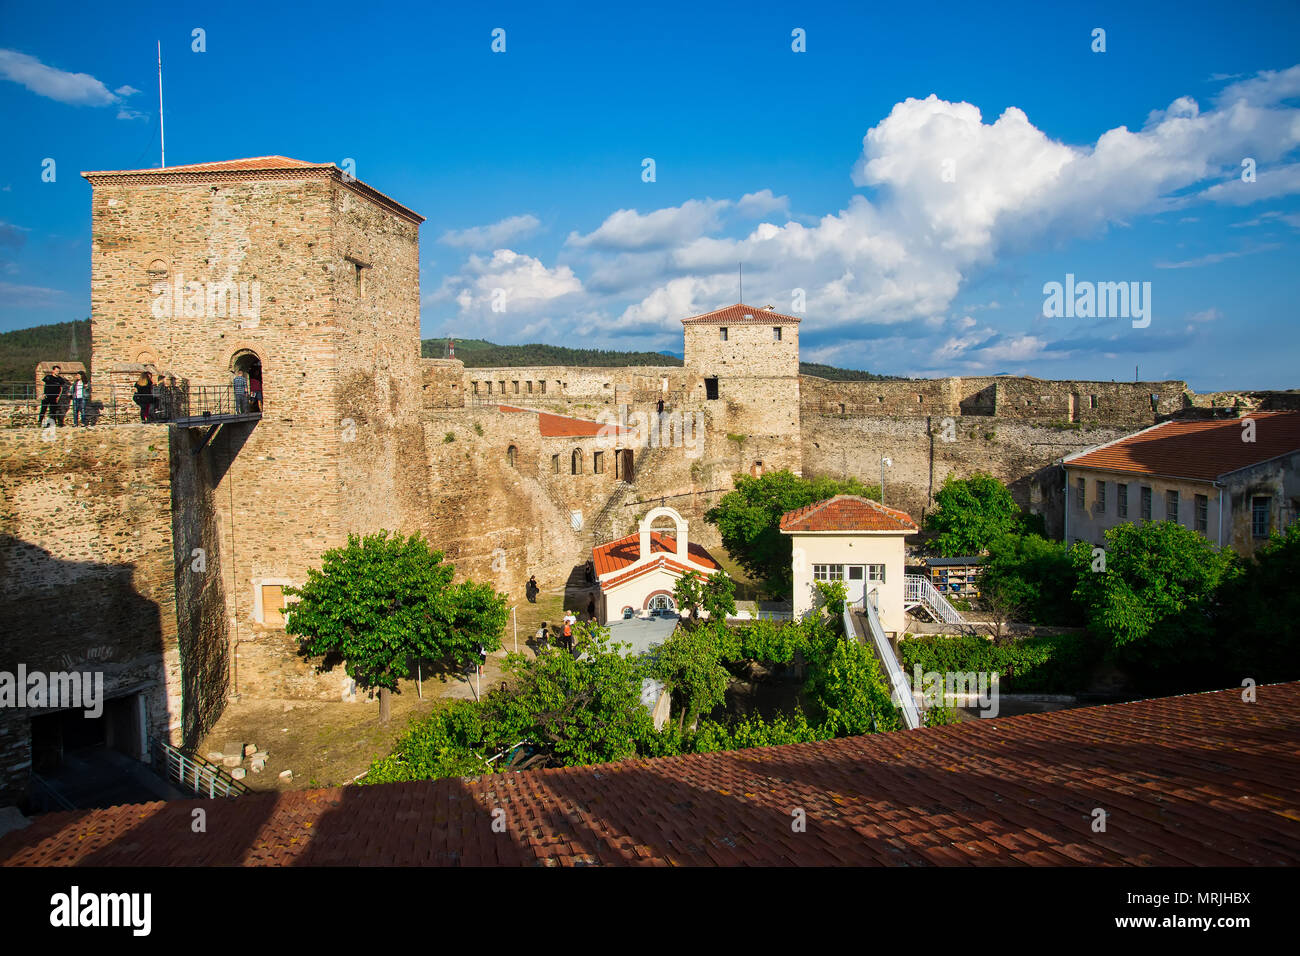 Thessaloniki, Griechenland, 11. Mai 2018: Panoramablick auf die alte byzantinische Burg in der Stadt Thessaloniki, Griechenland. Yedi Koule war der höchste securit Stockfoto